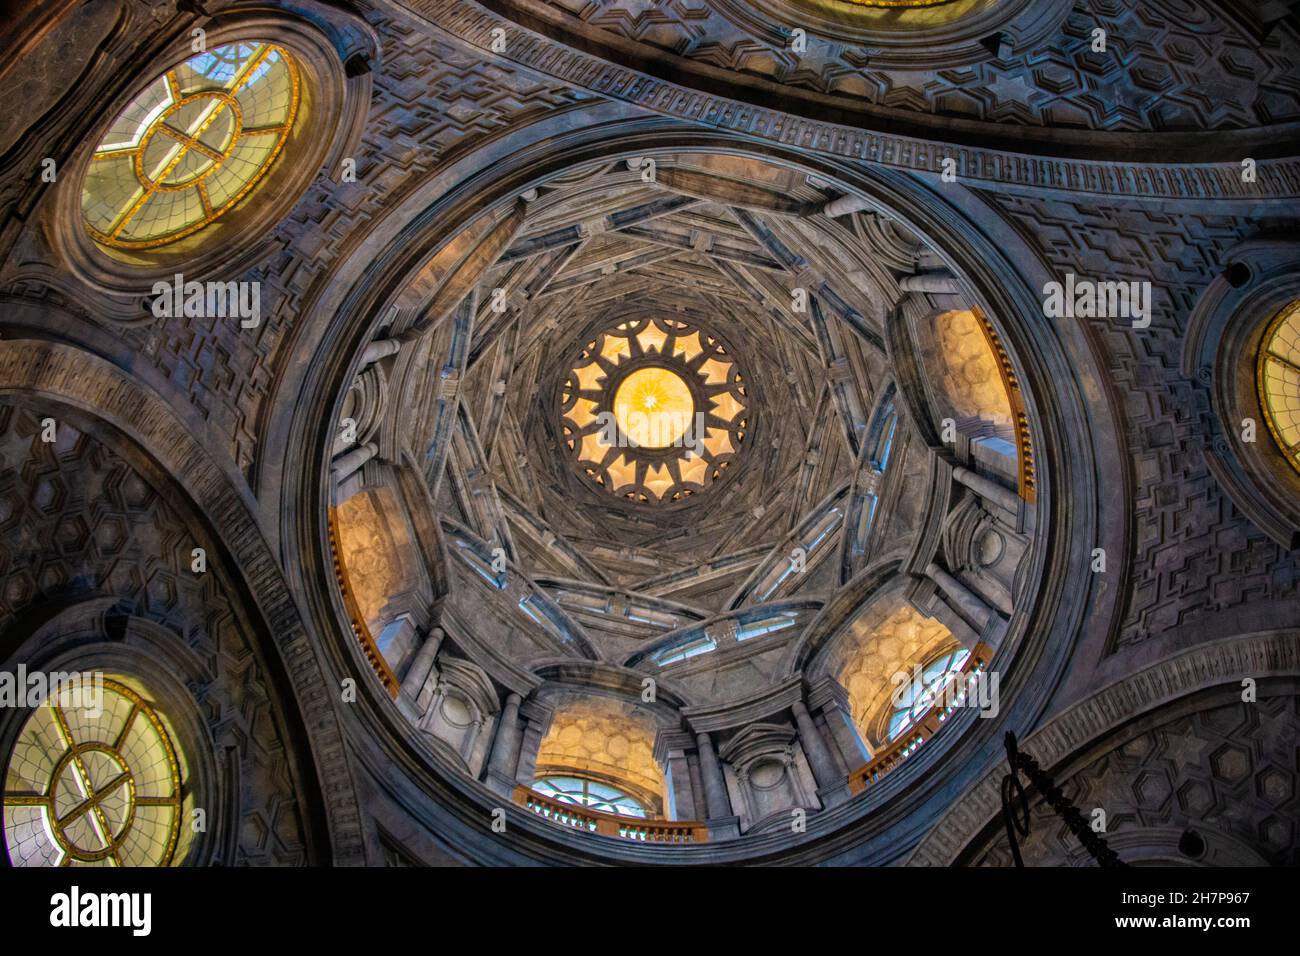 Atemberaubende Innenansicht der Kuppel der Cappella della Sacra Sindone (Kapelle des Heiligen Grabtuchs), Piazza San Giovanni, Turin, Piemont, Italien Stockfoto